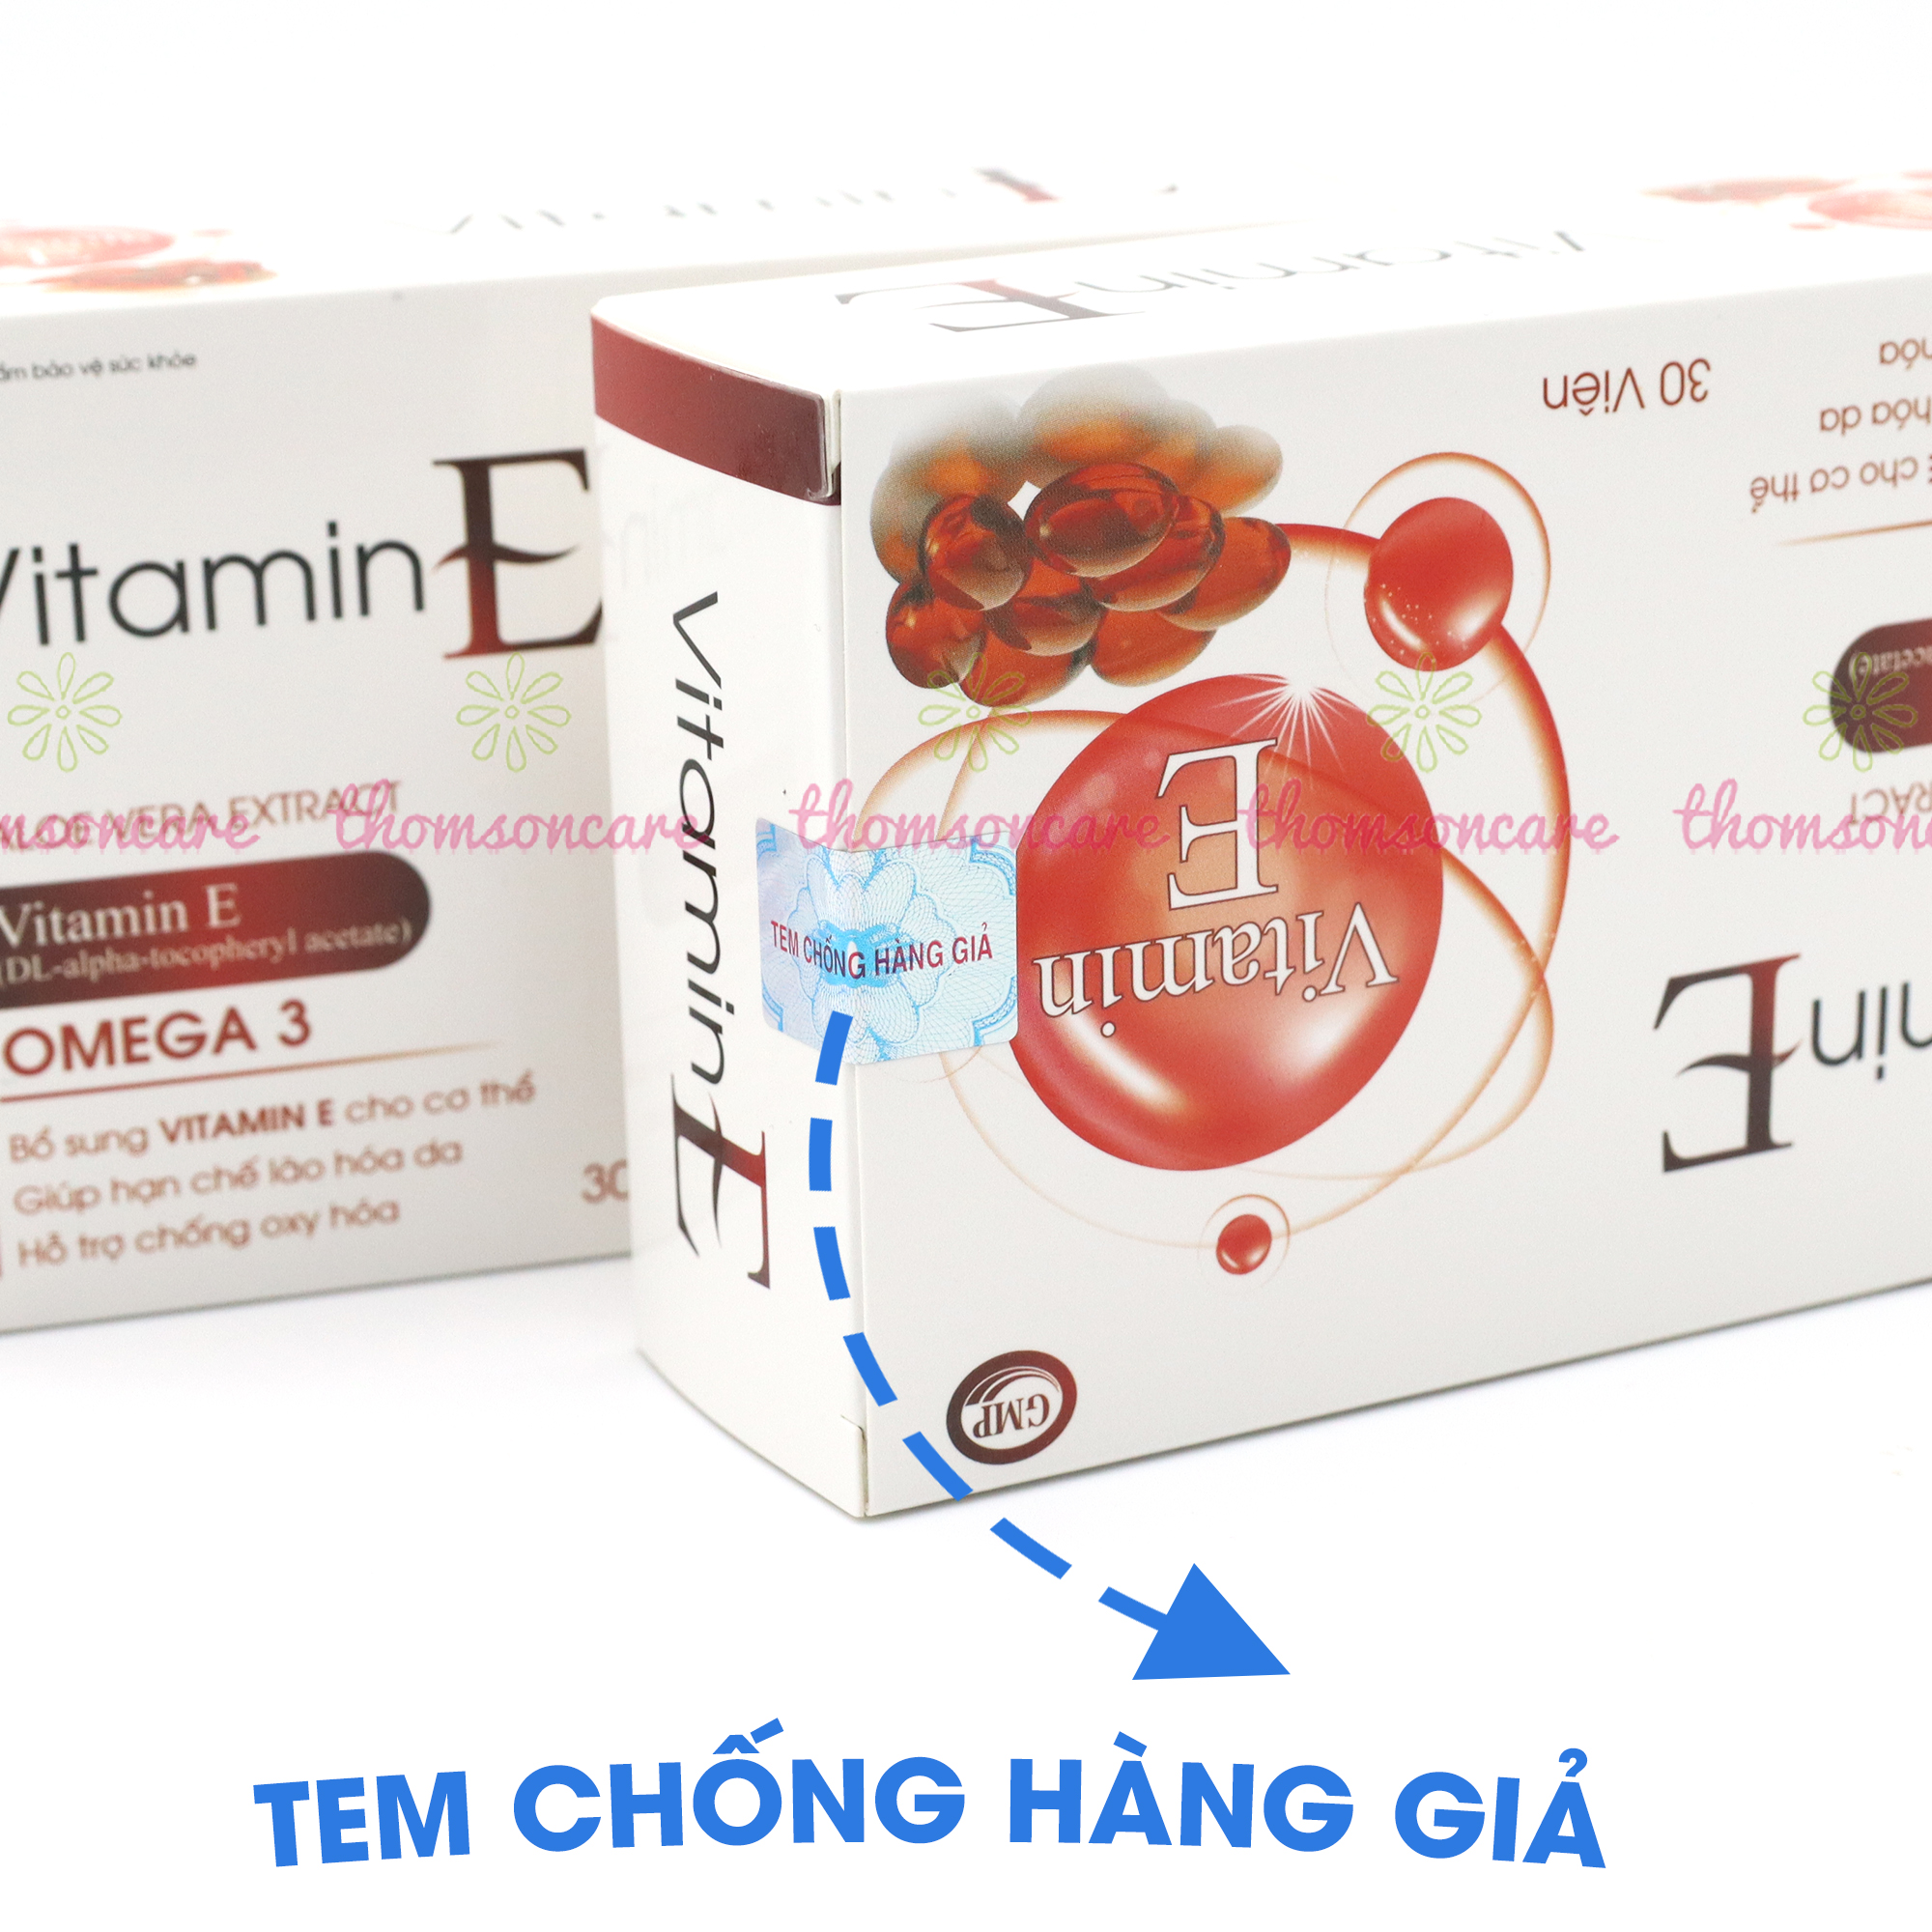 Viên uống Vitamin E đỏ thêm Omega 3, Hộp 30 viên - Bổ sung Vitamin E , chống oxy hóa giúp đẹp da, da sáng đẹp - Thomsoncare